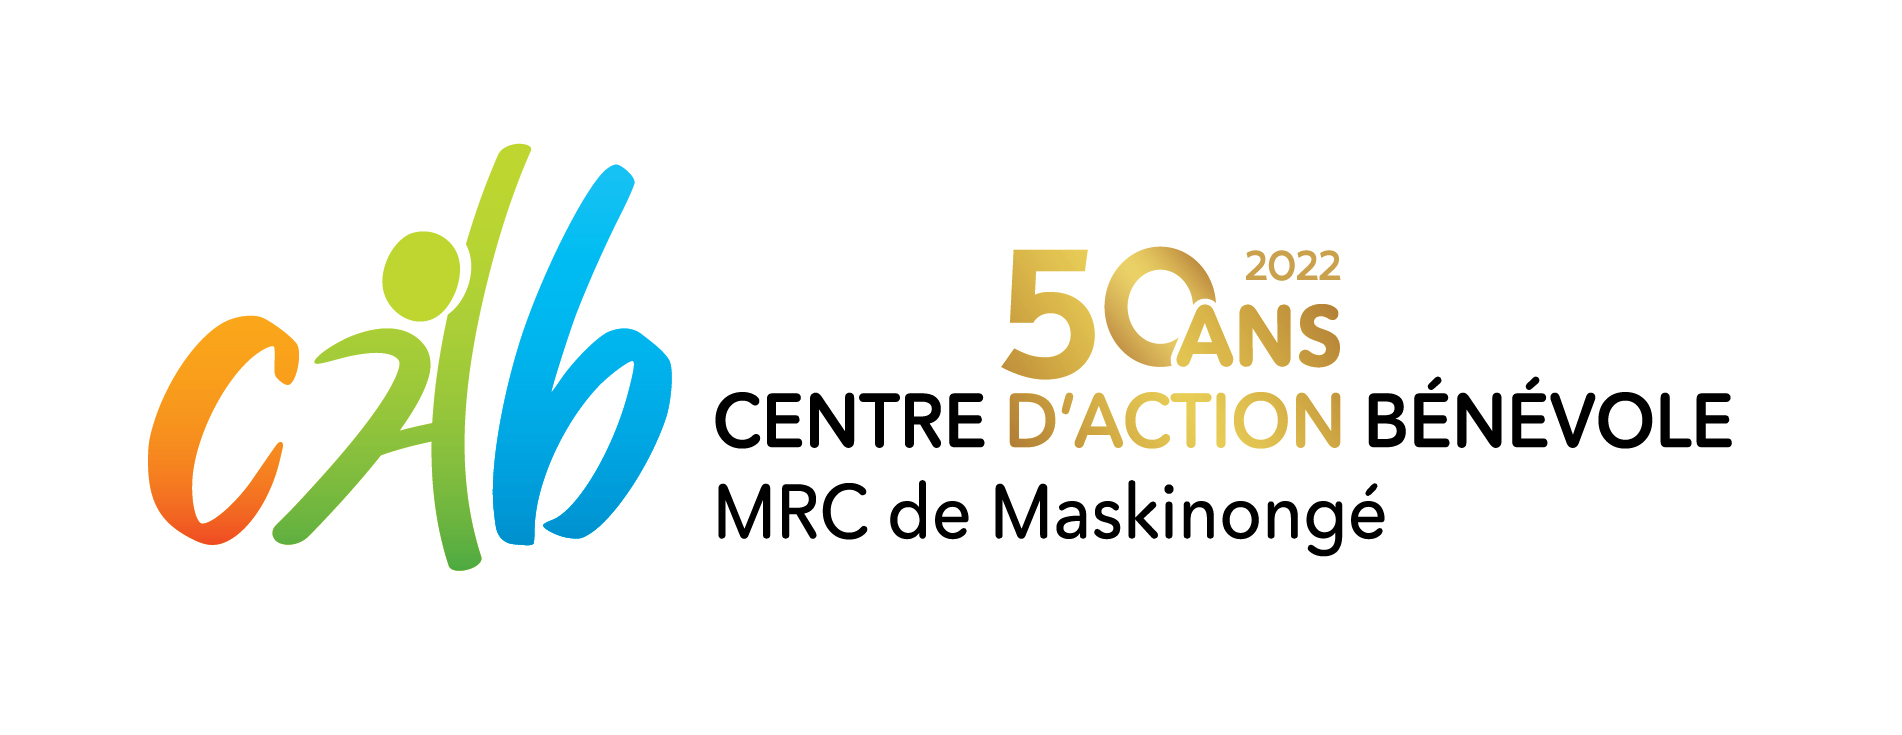 Centre d’action bénévole de la MRC de Maskinongé situé à Louiseville